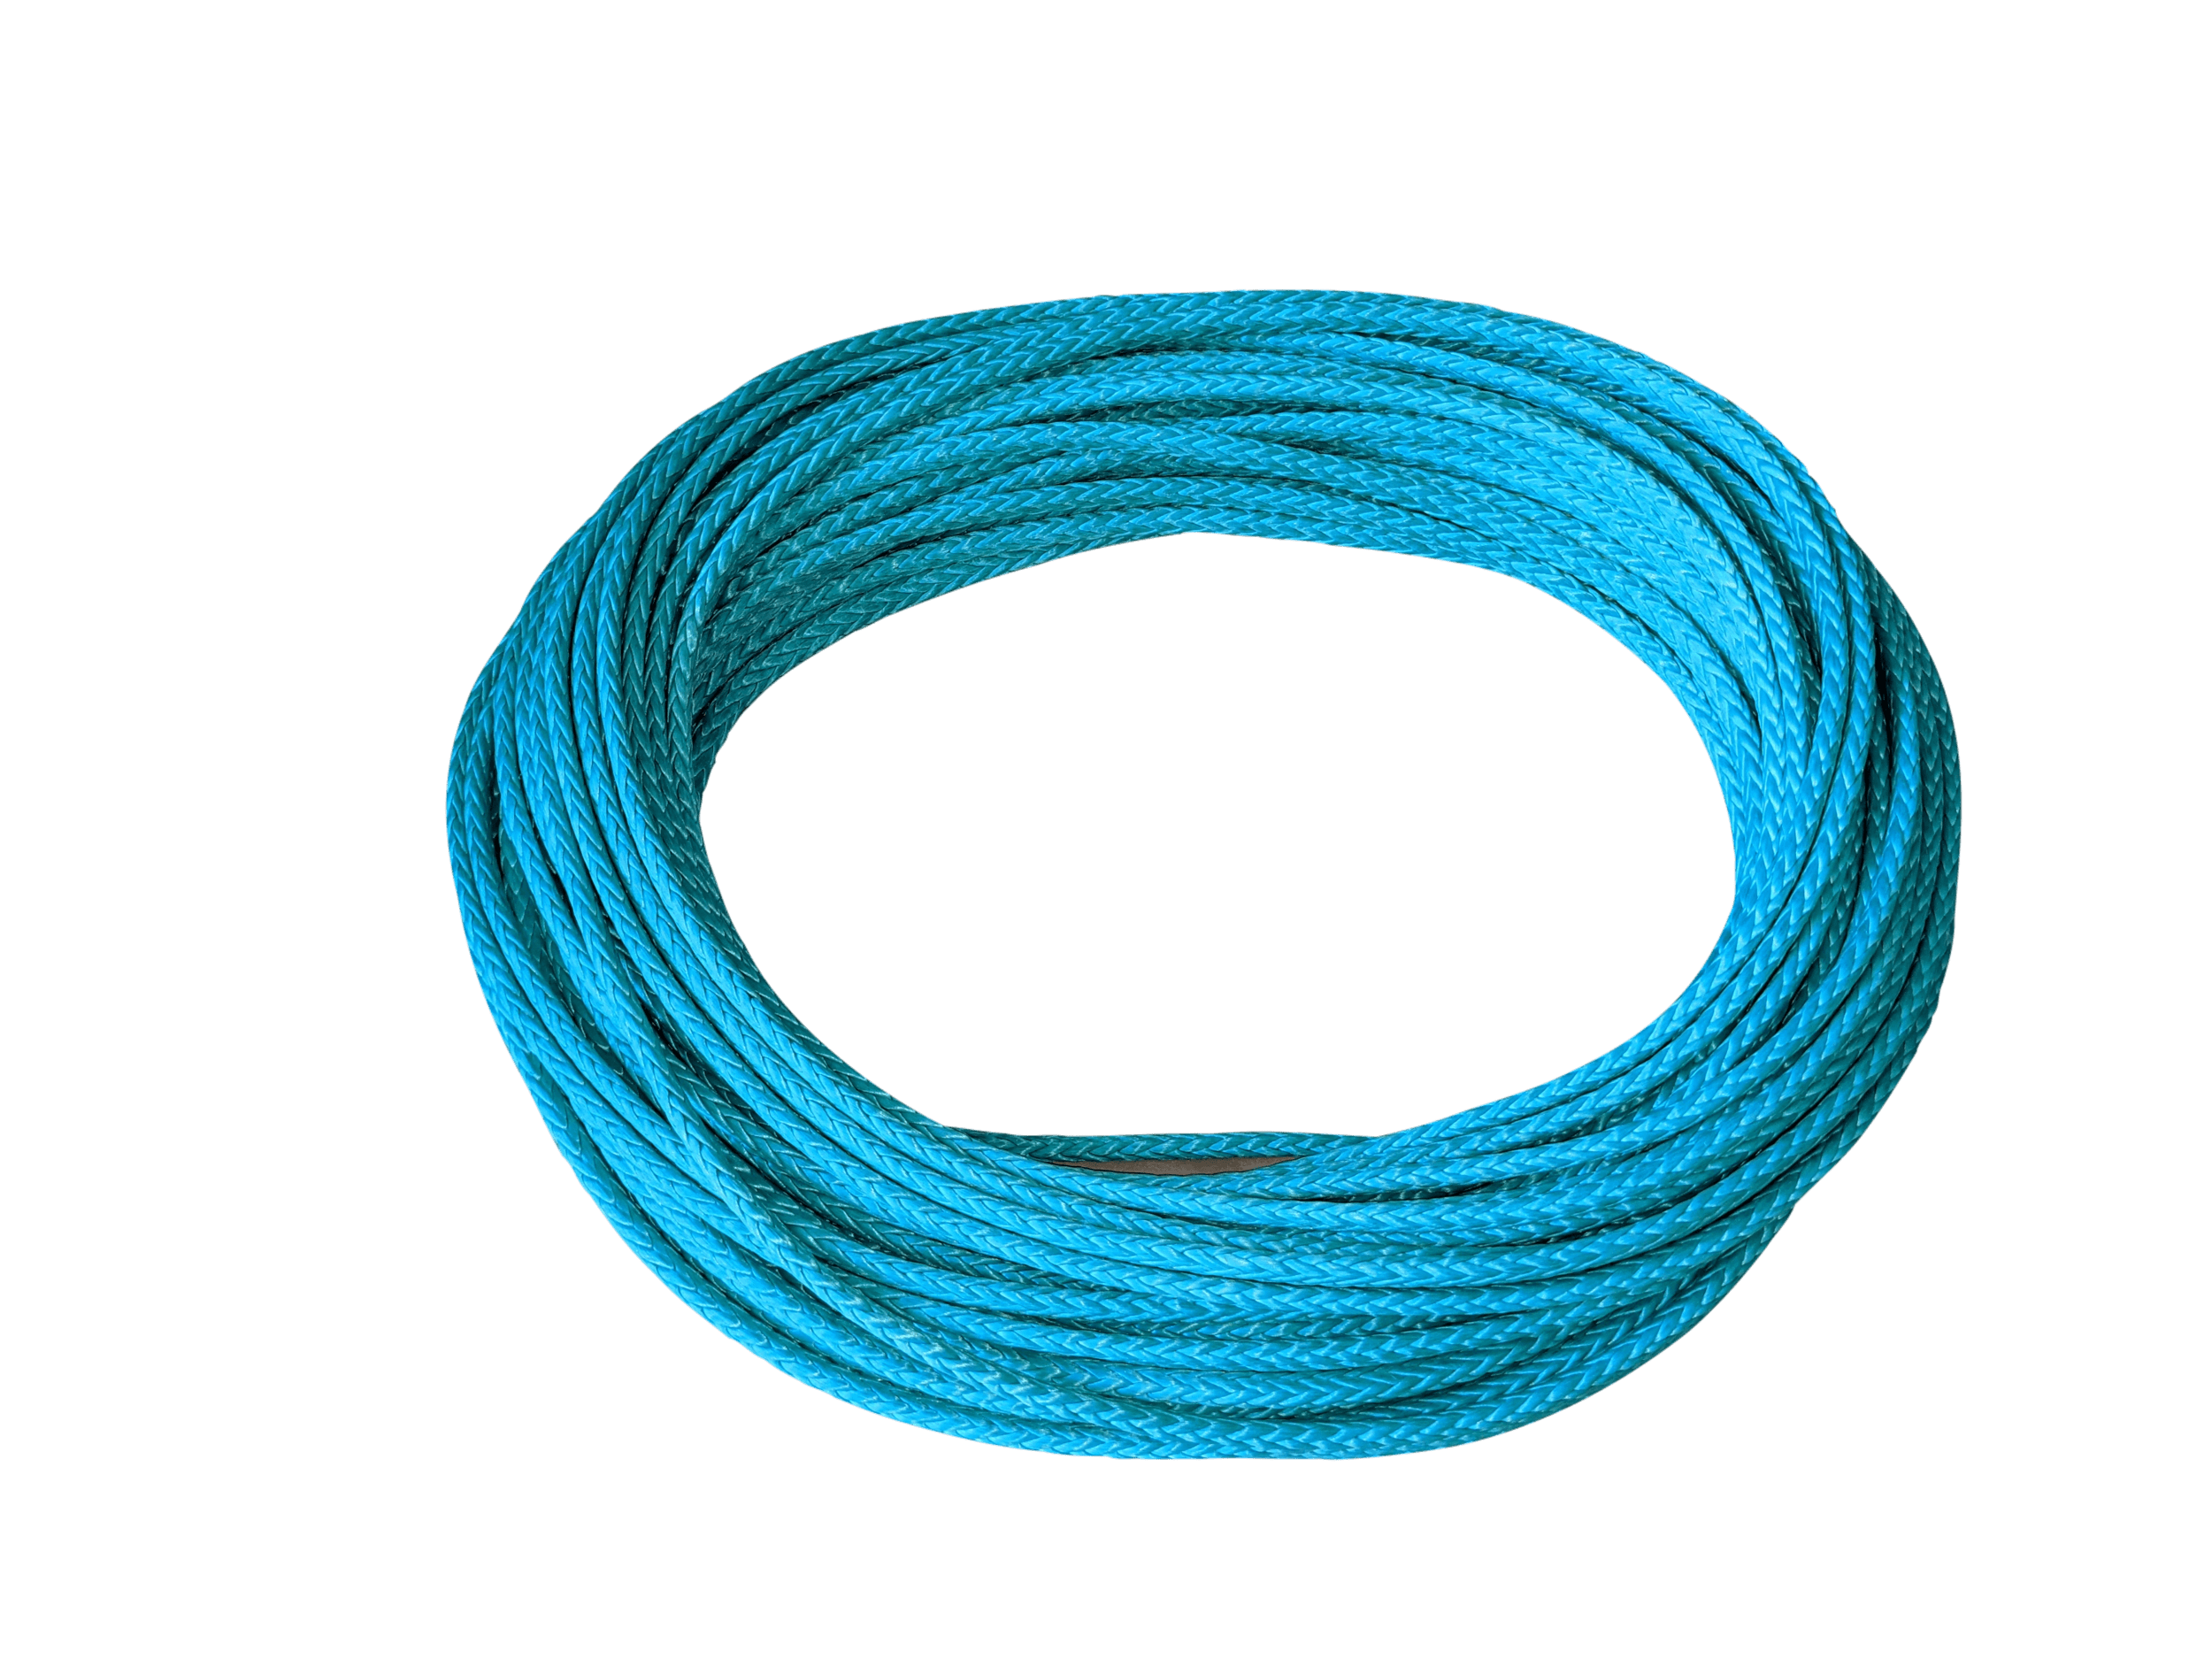 Samson AmSteel Blue Rope  Dyneema rope, Dynamic rope, Emergency towing